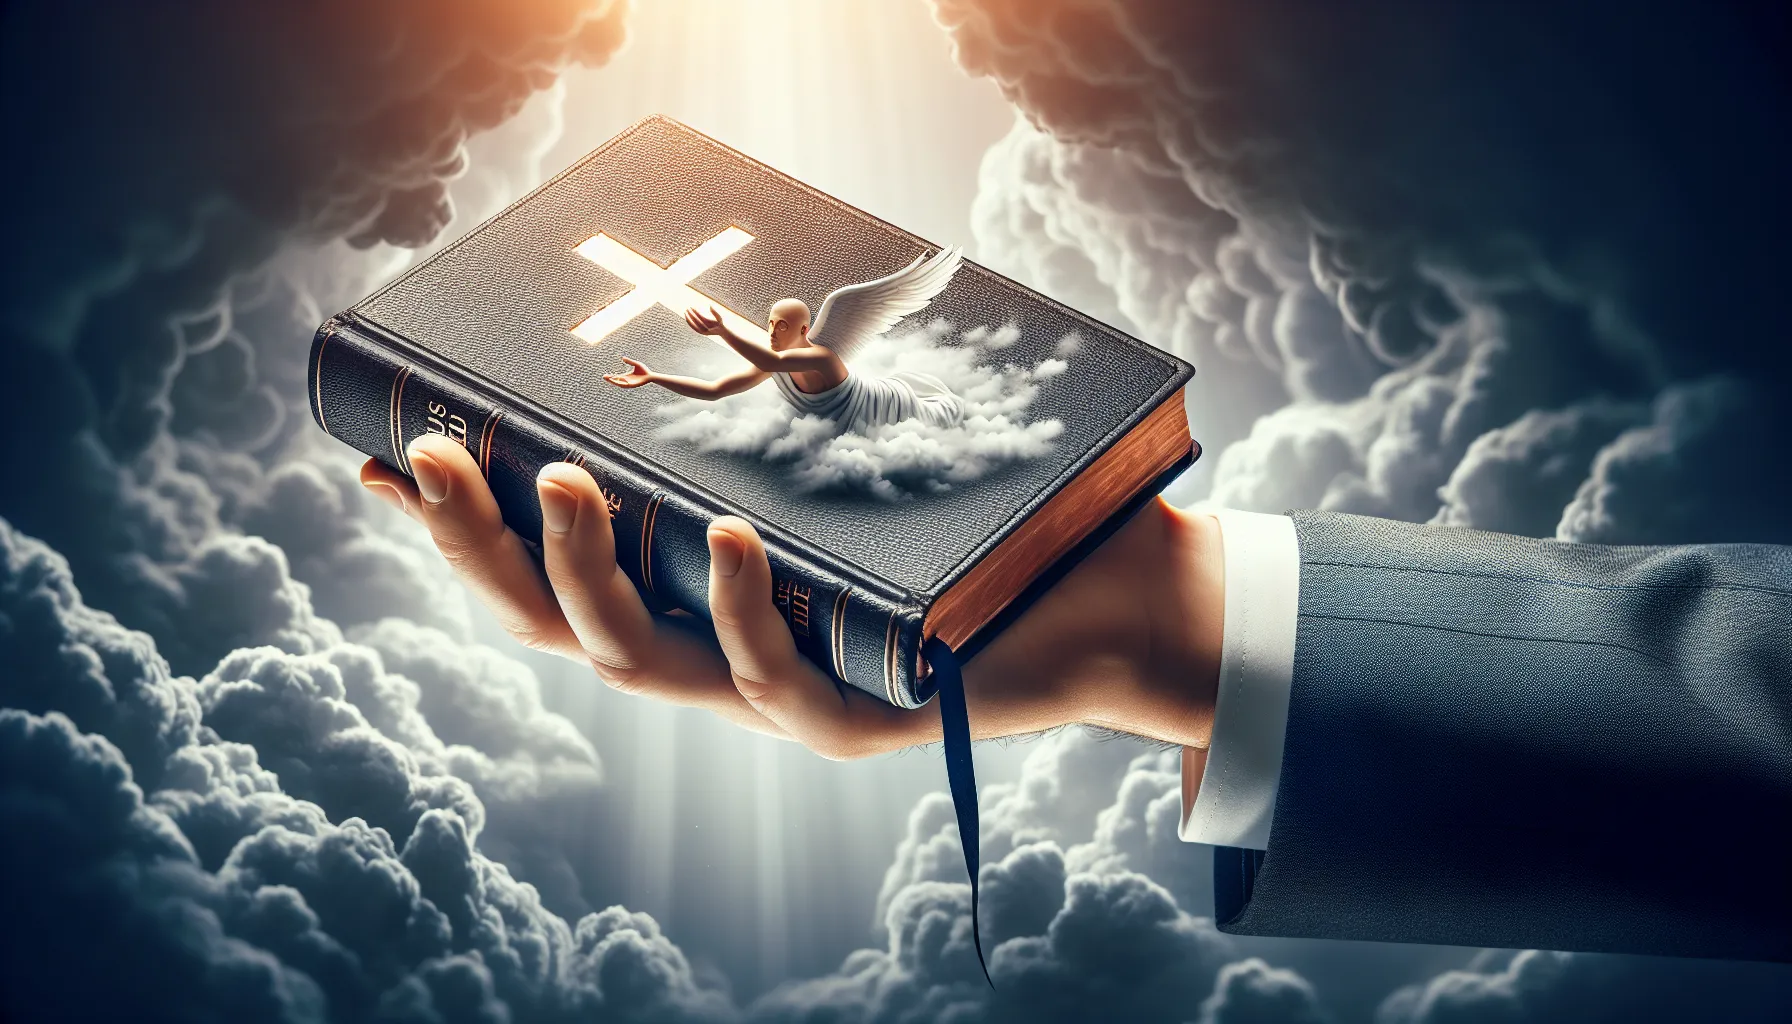 Imagen de un libro de la Biblia abierto con una mano sosteniéndolo, simbolizando el debate sobre la eutanasia y el valor de la vida según principios religiosos.